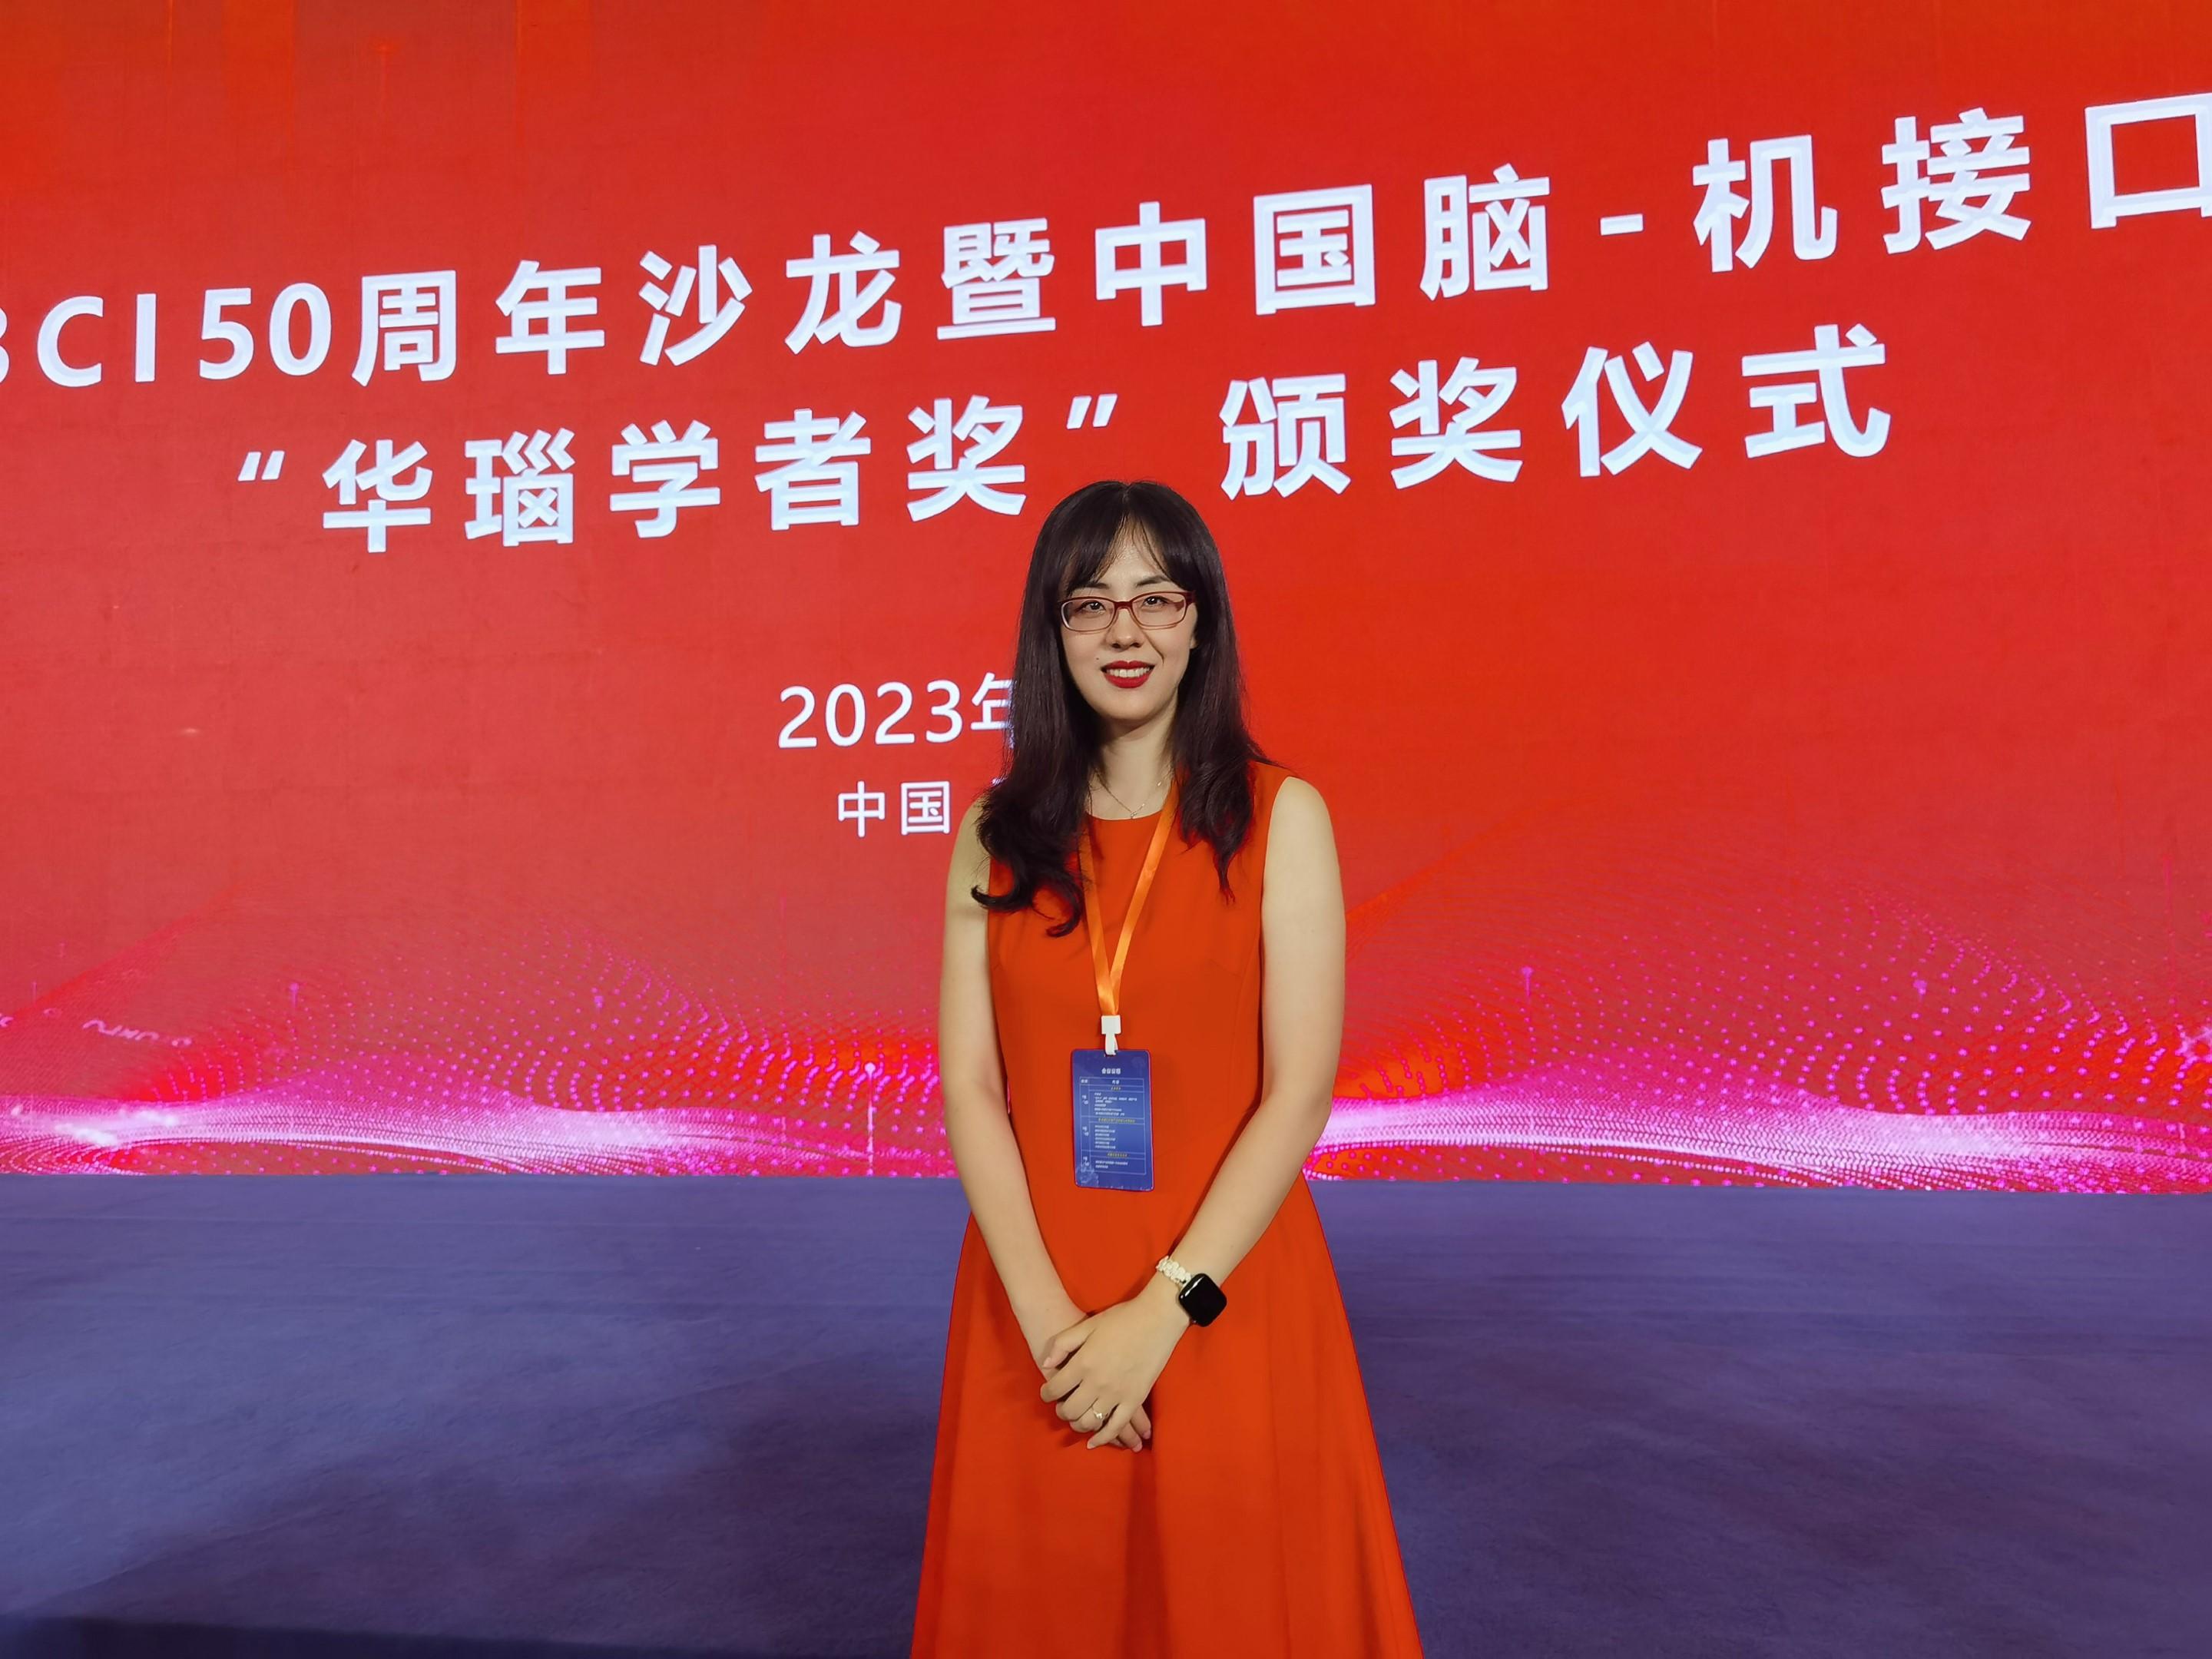 王怡雯教授于全国首届脑—机接口大会获授华瑙学者奖—杰出青年奖。